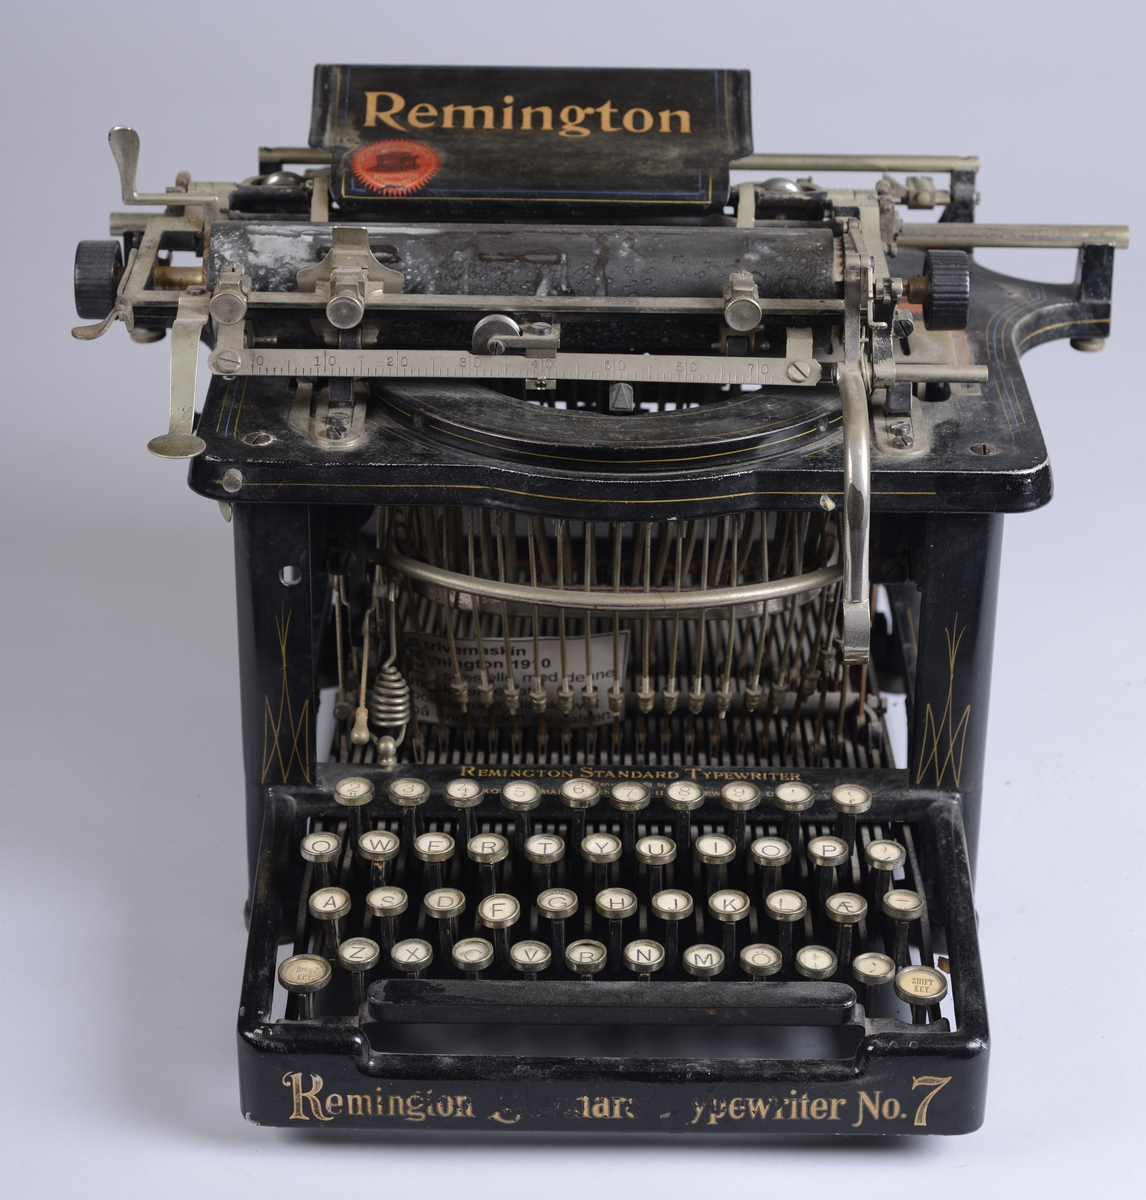 Skrivemaskin av merket Remington fra ca. 1910.